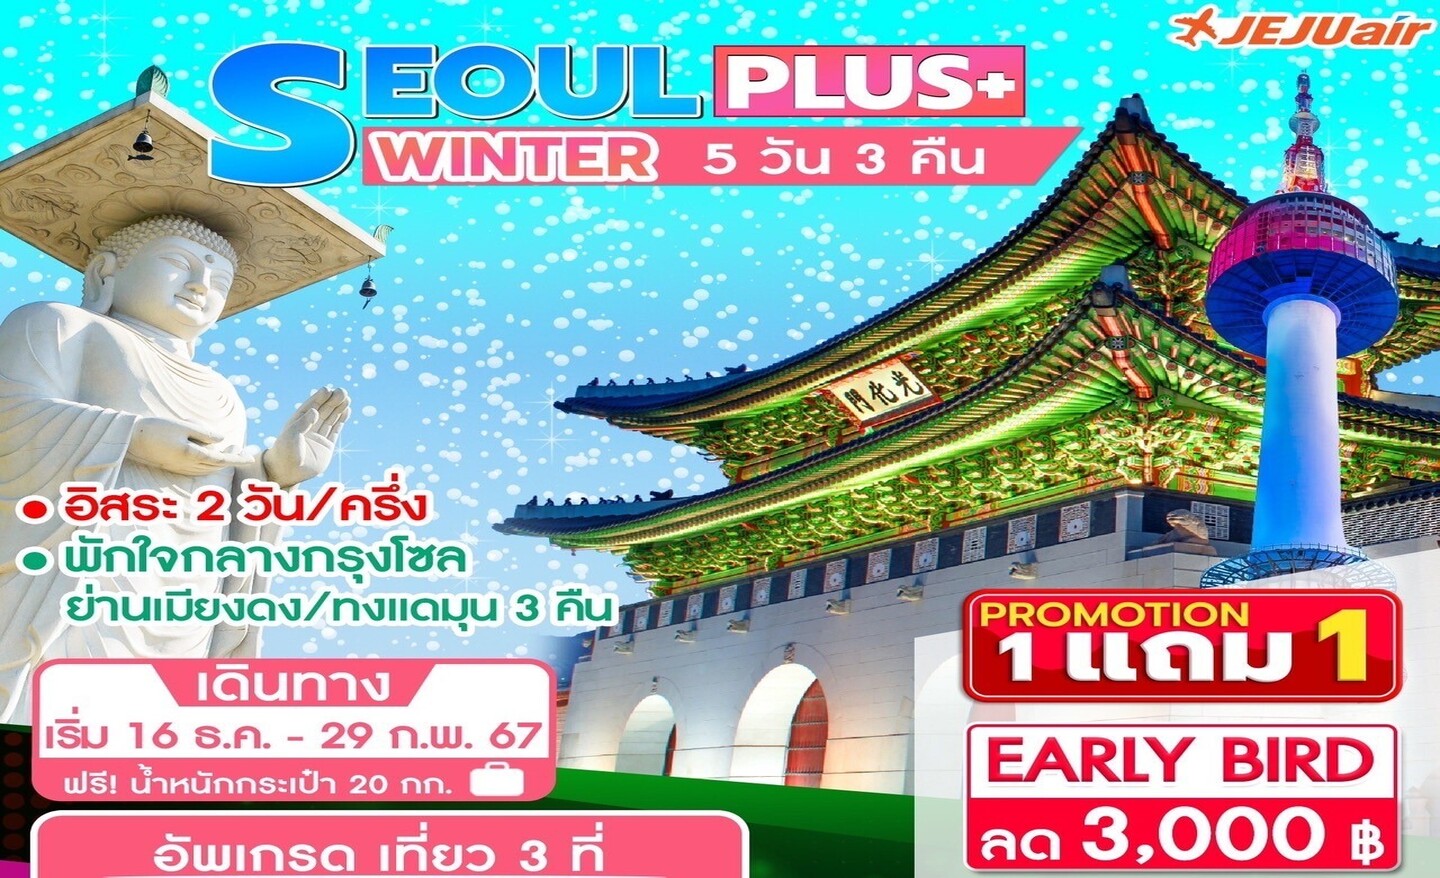 ทัวร์เกาหลี Seoul Plus+ Winter 5D3N (ธ.ค.-ก.พ.67)